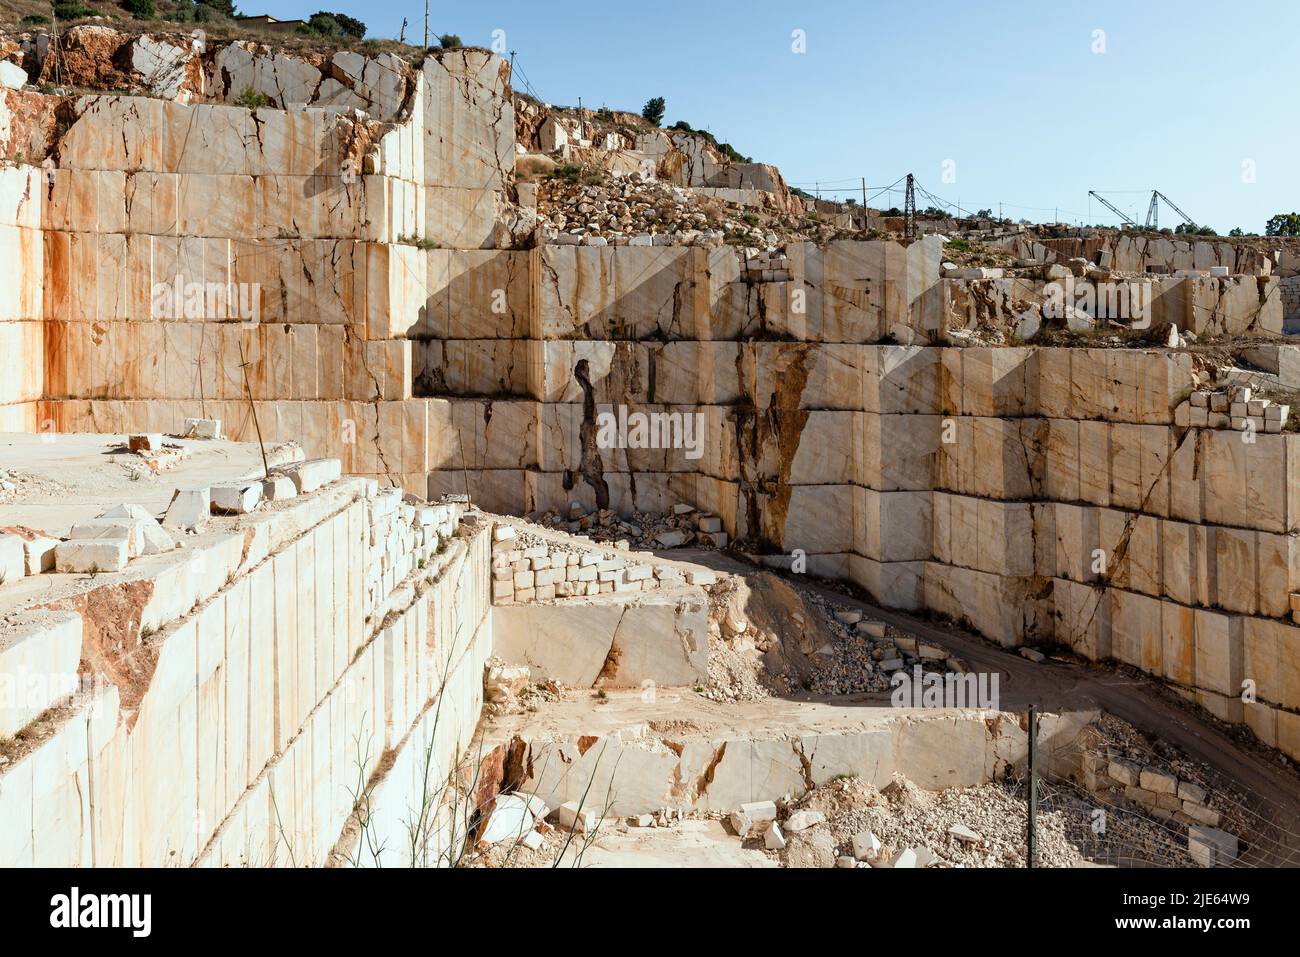 Pared de roca, rampas, bloques y excavadoras en la cantera de mármol cerca de Orosei en la costa este de Cerdeña, Baronia, Italia Foto de stock